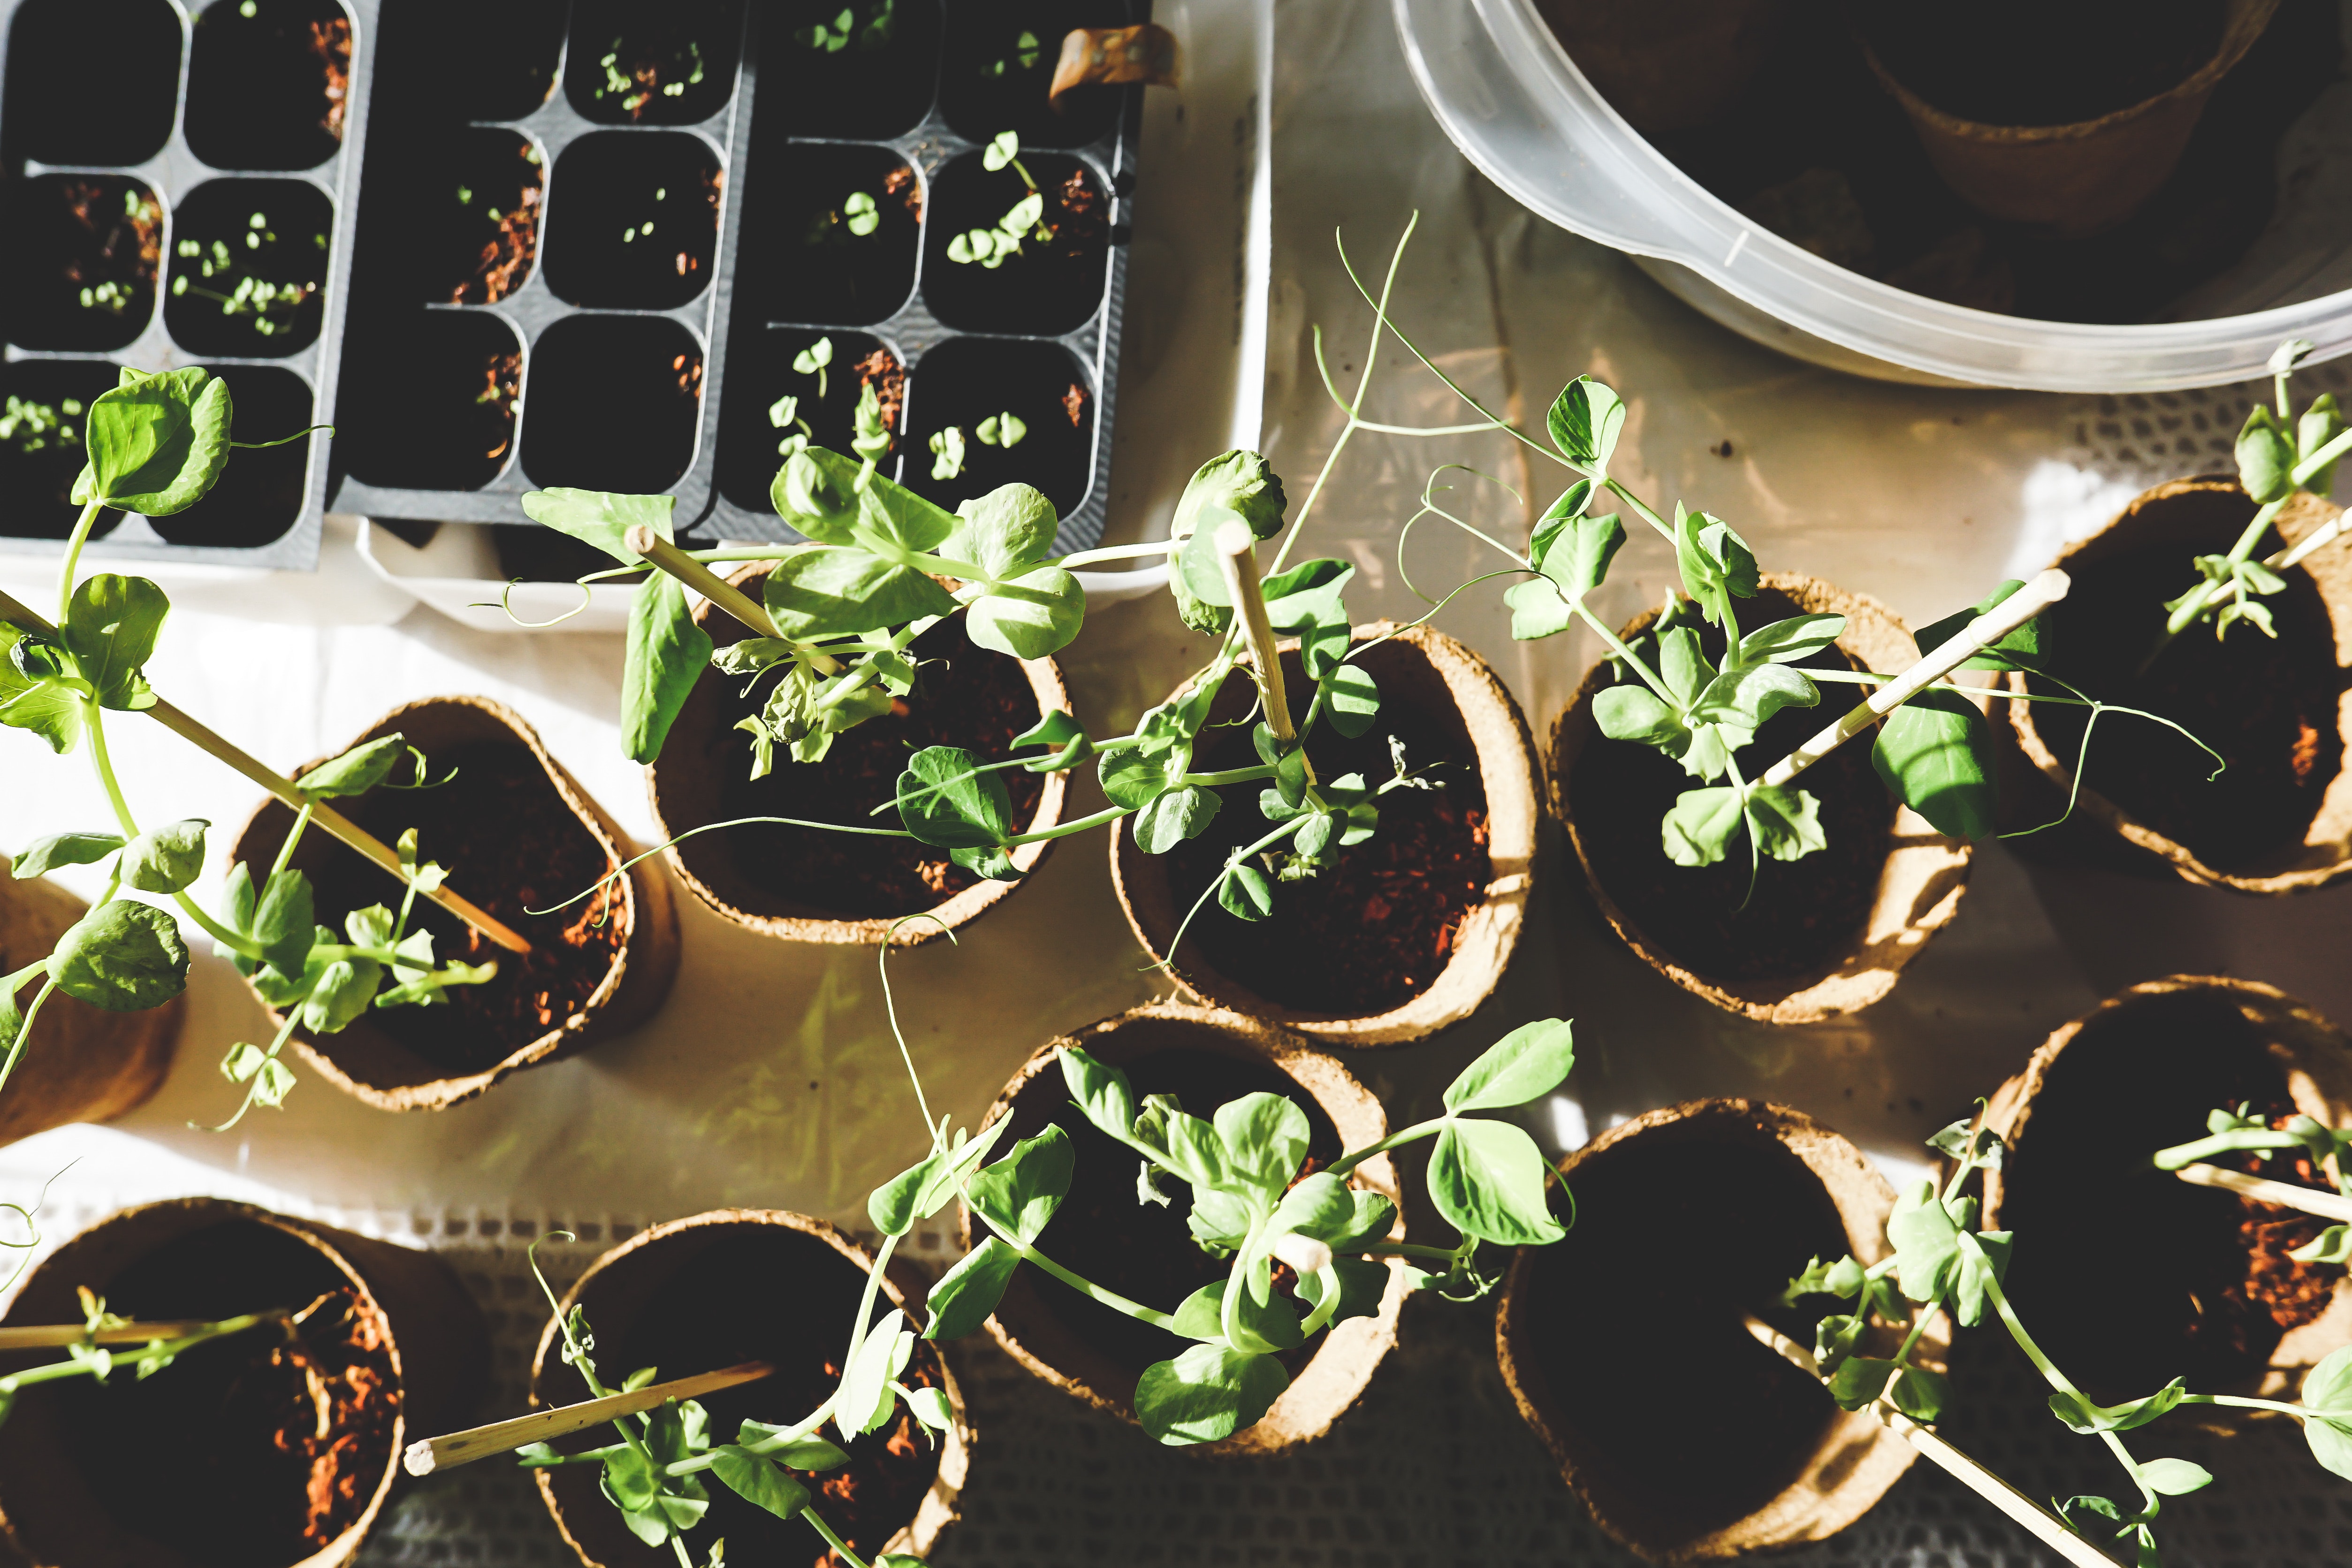 Manfaat berkebun dan merawat tanaman hias bagi kesehatan mental lansia